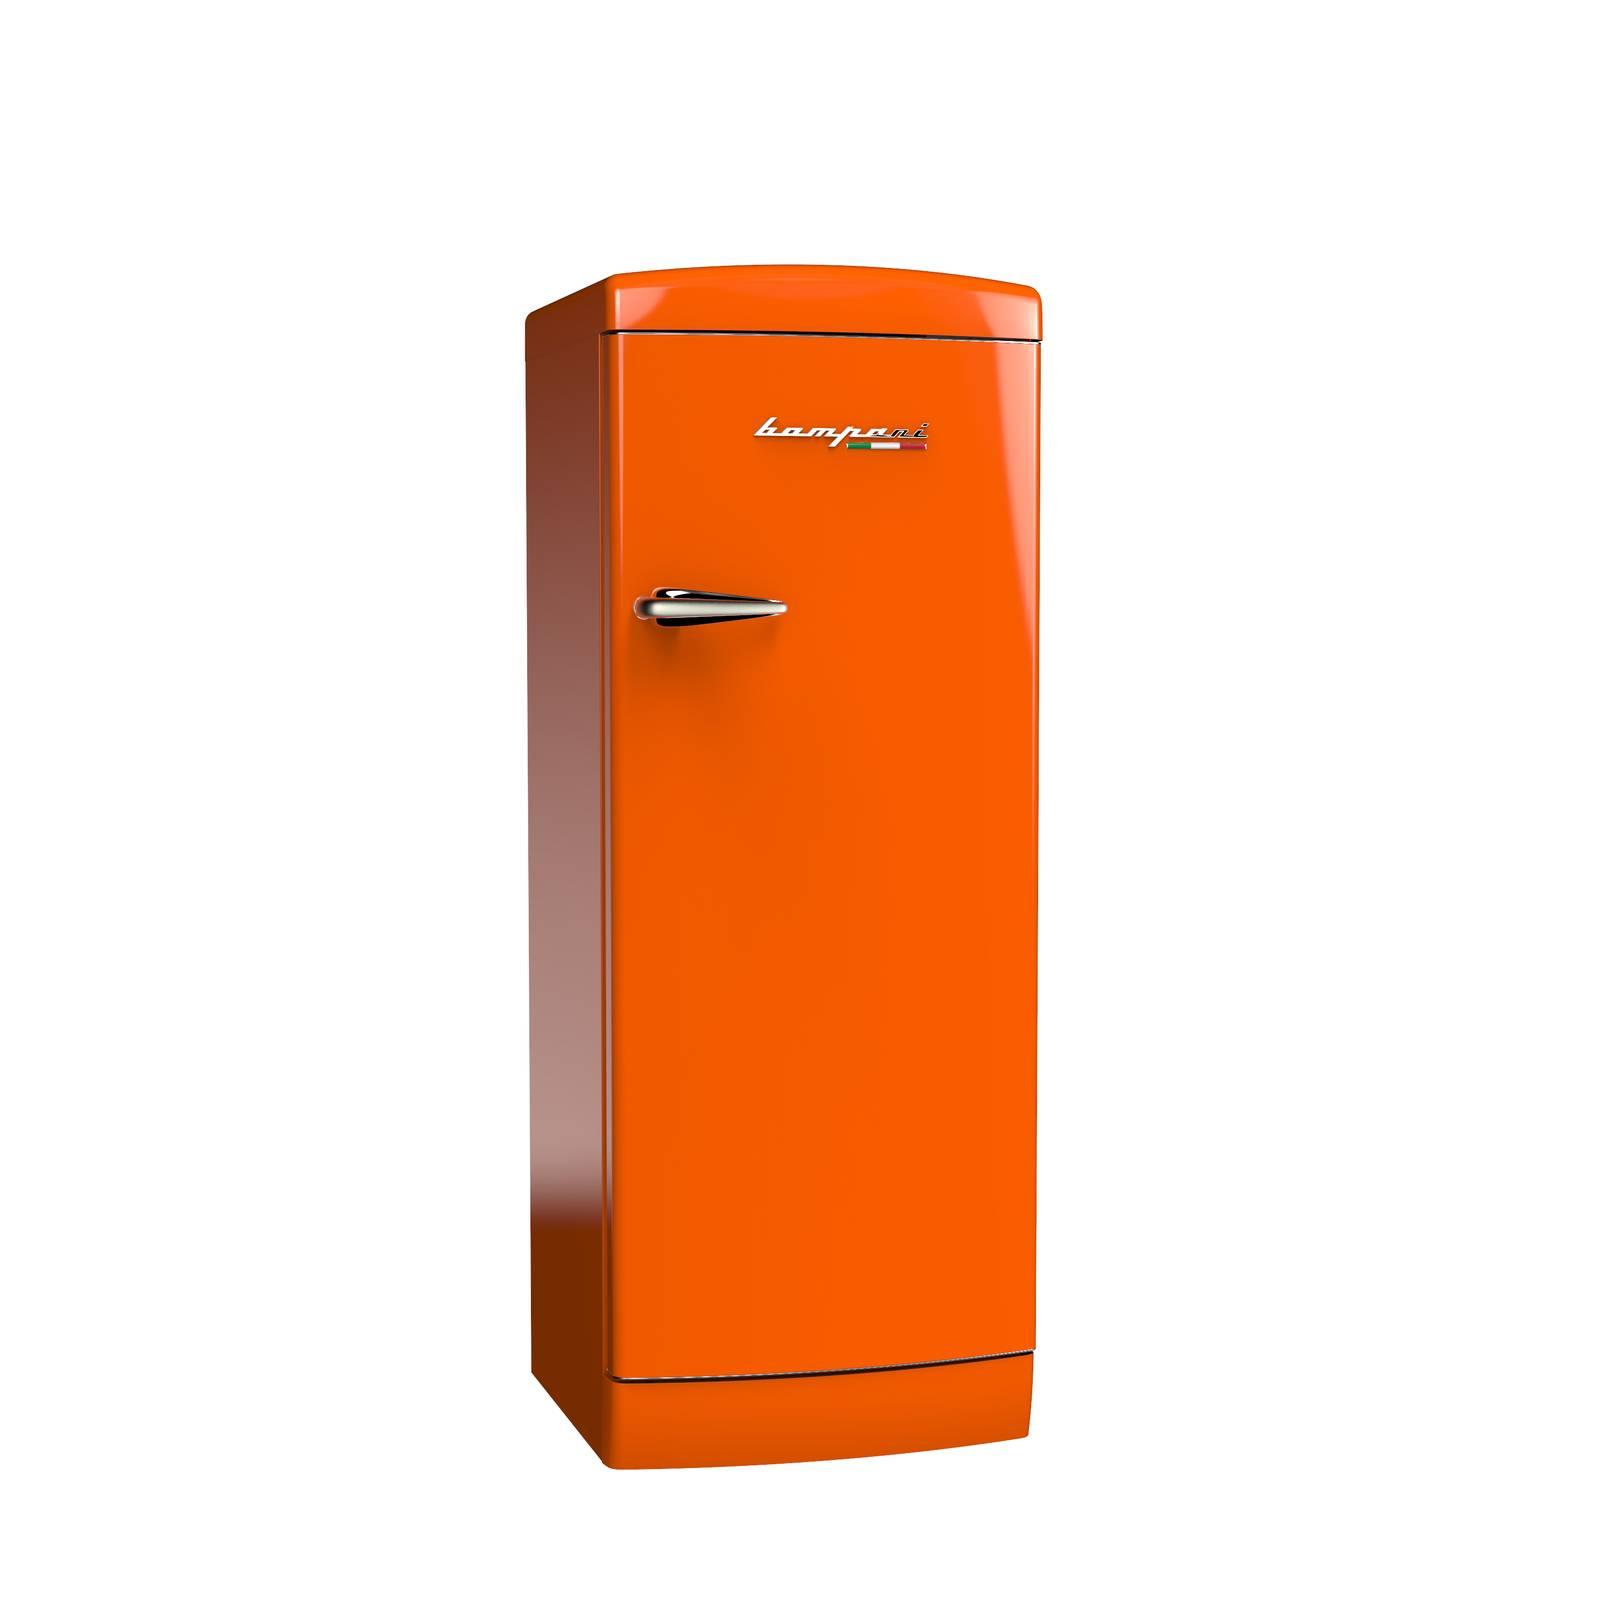 Холодильник иваново каталог товаров и цены. Холодильник Bompani. Холодильник Bompani bomp548/r. Холодильник Bompani невысокий. Холодильник Haier оранжевый.